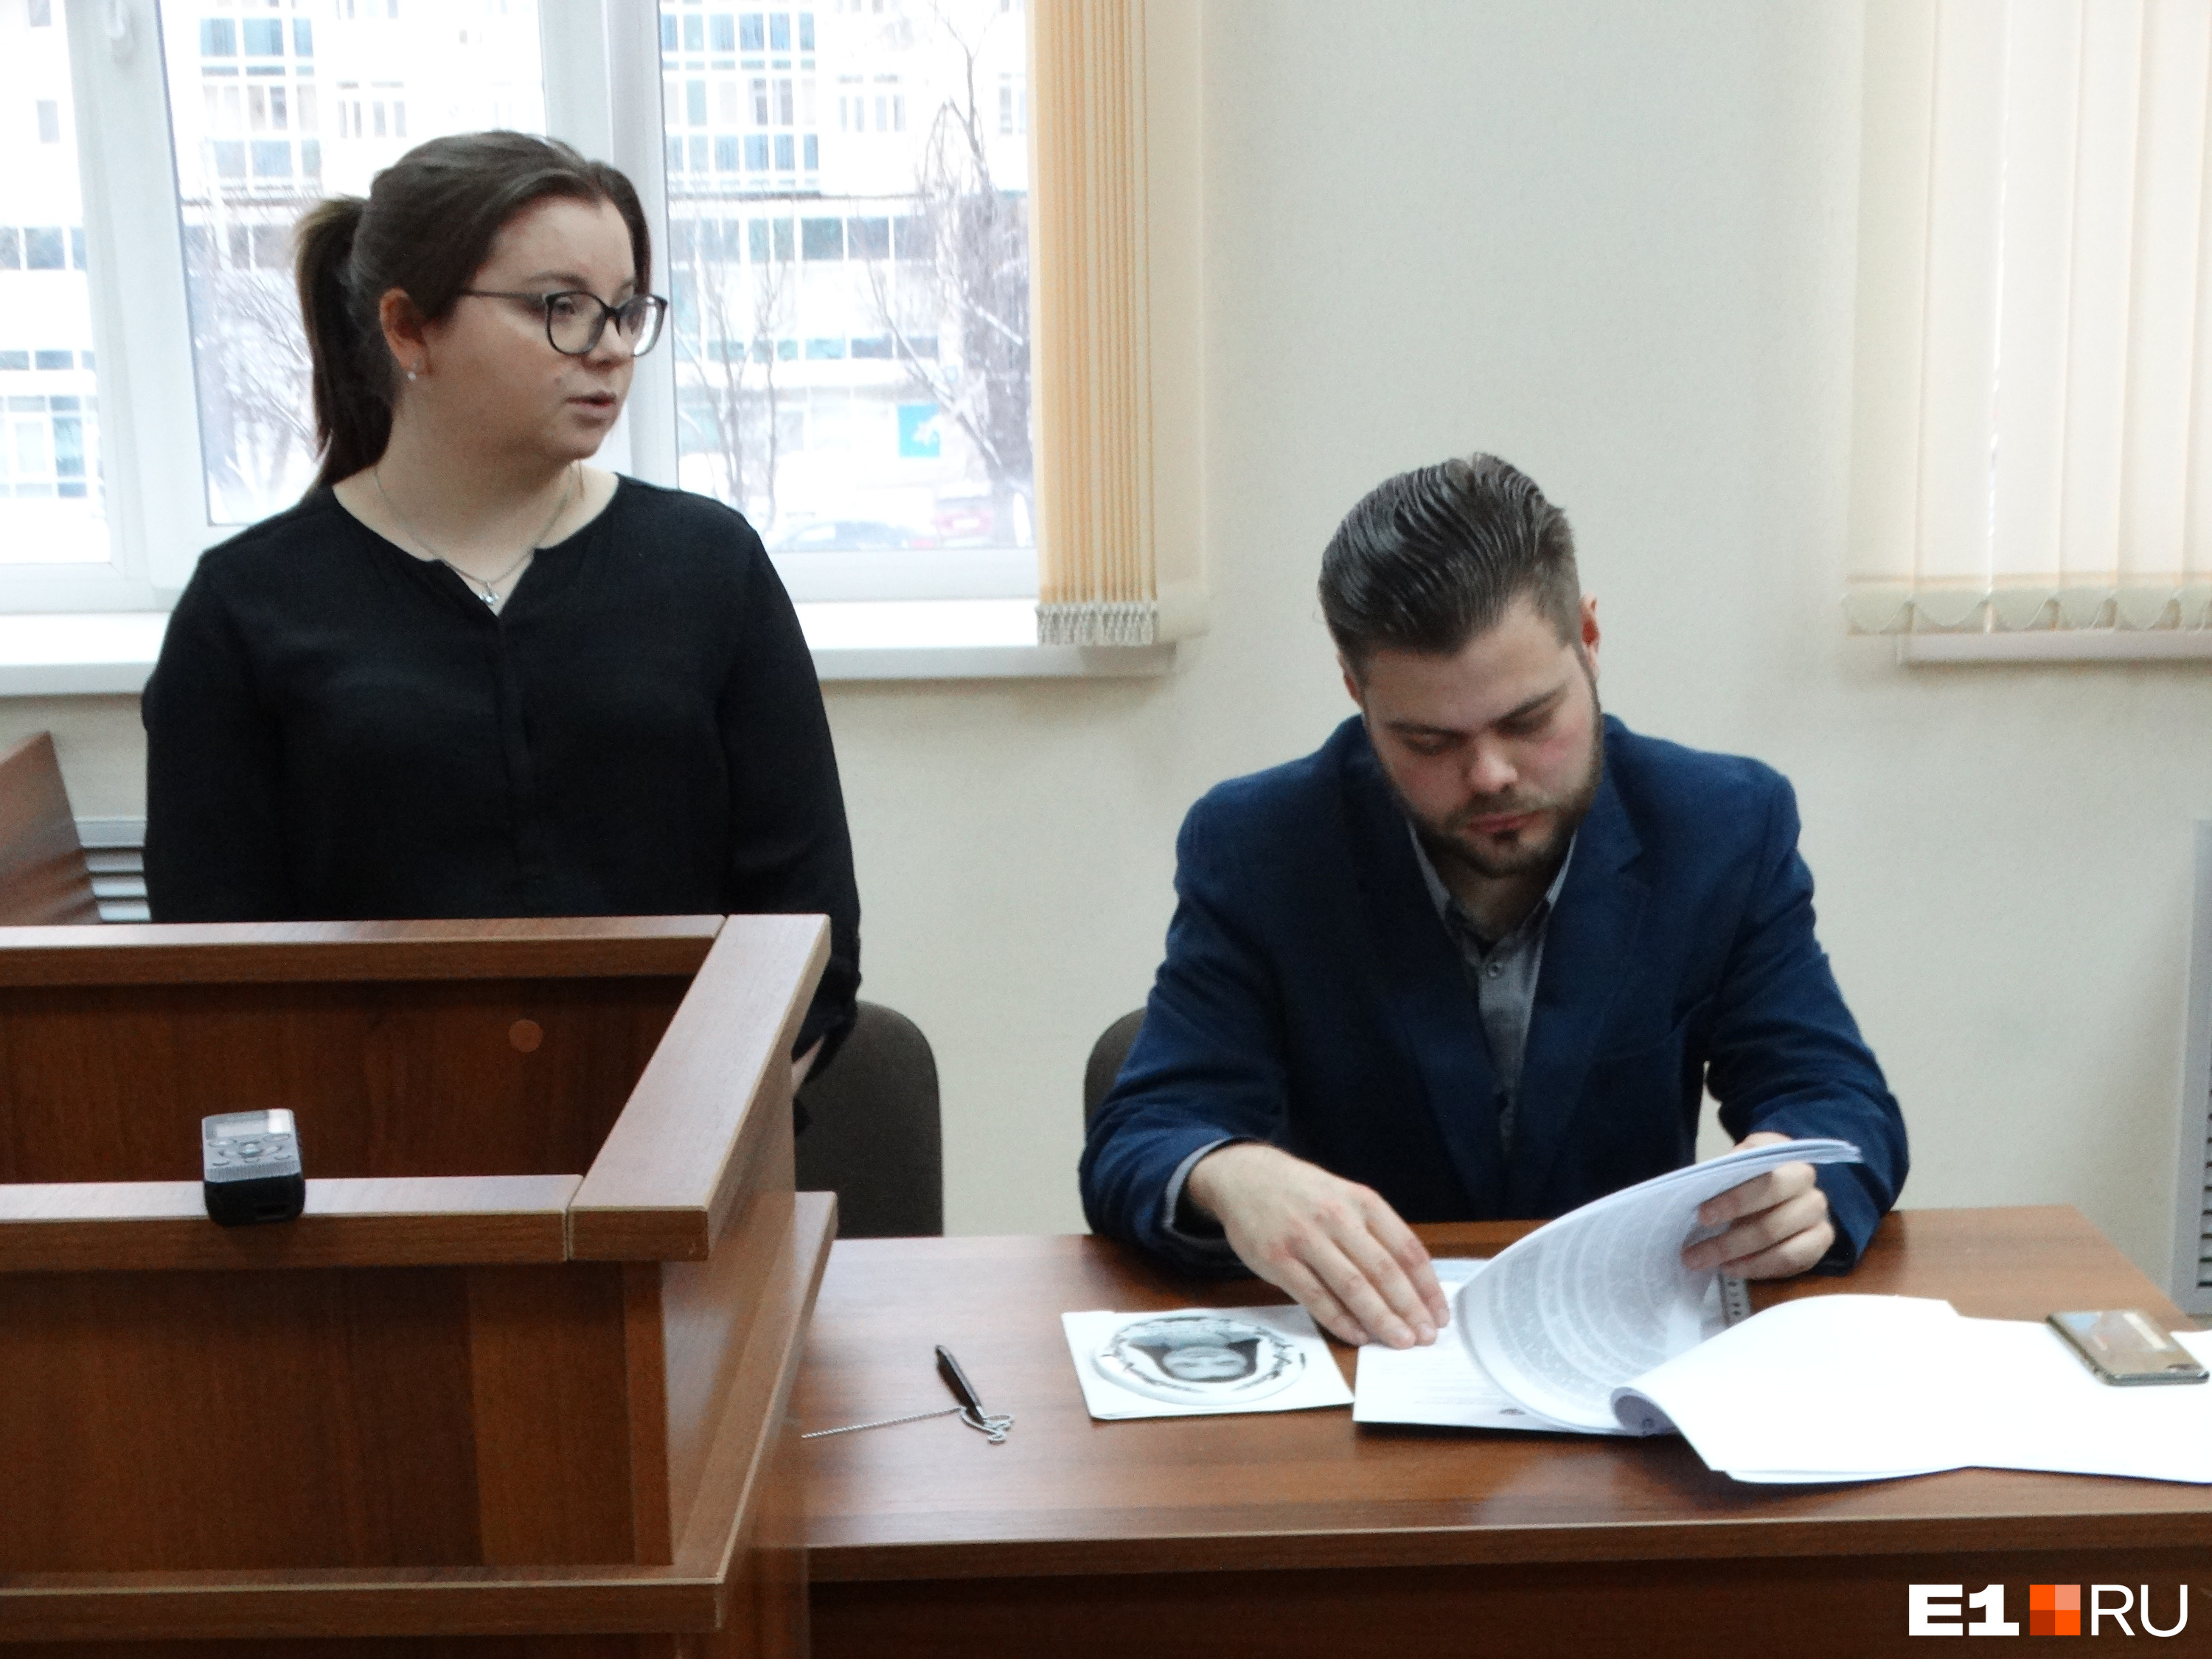 Екатерина Колбасина намерена наказать коммерсанта, который «похоронил» ее ради рекламы своего бизнеса